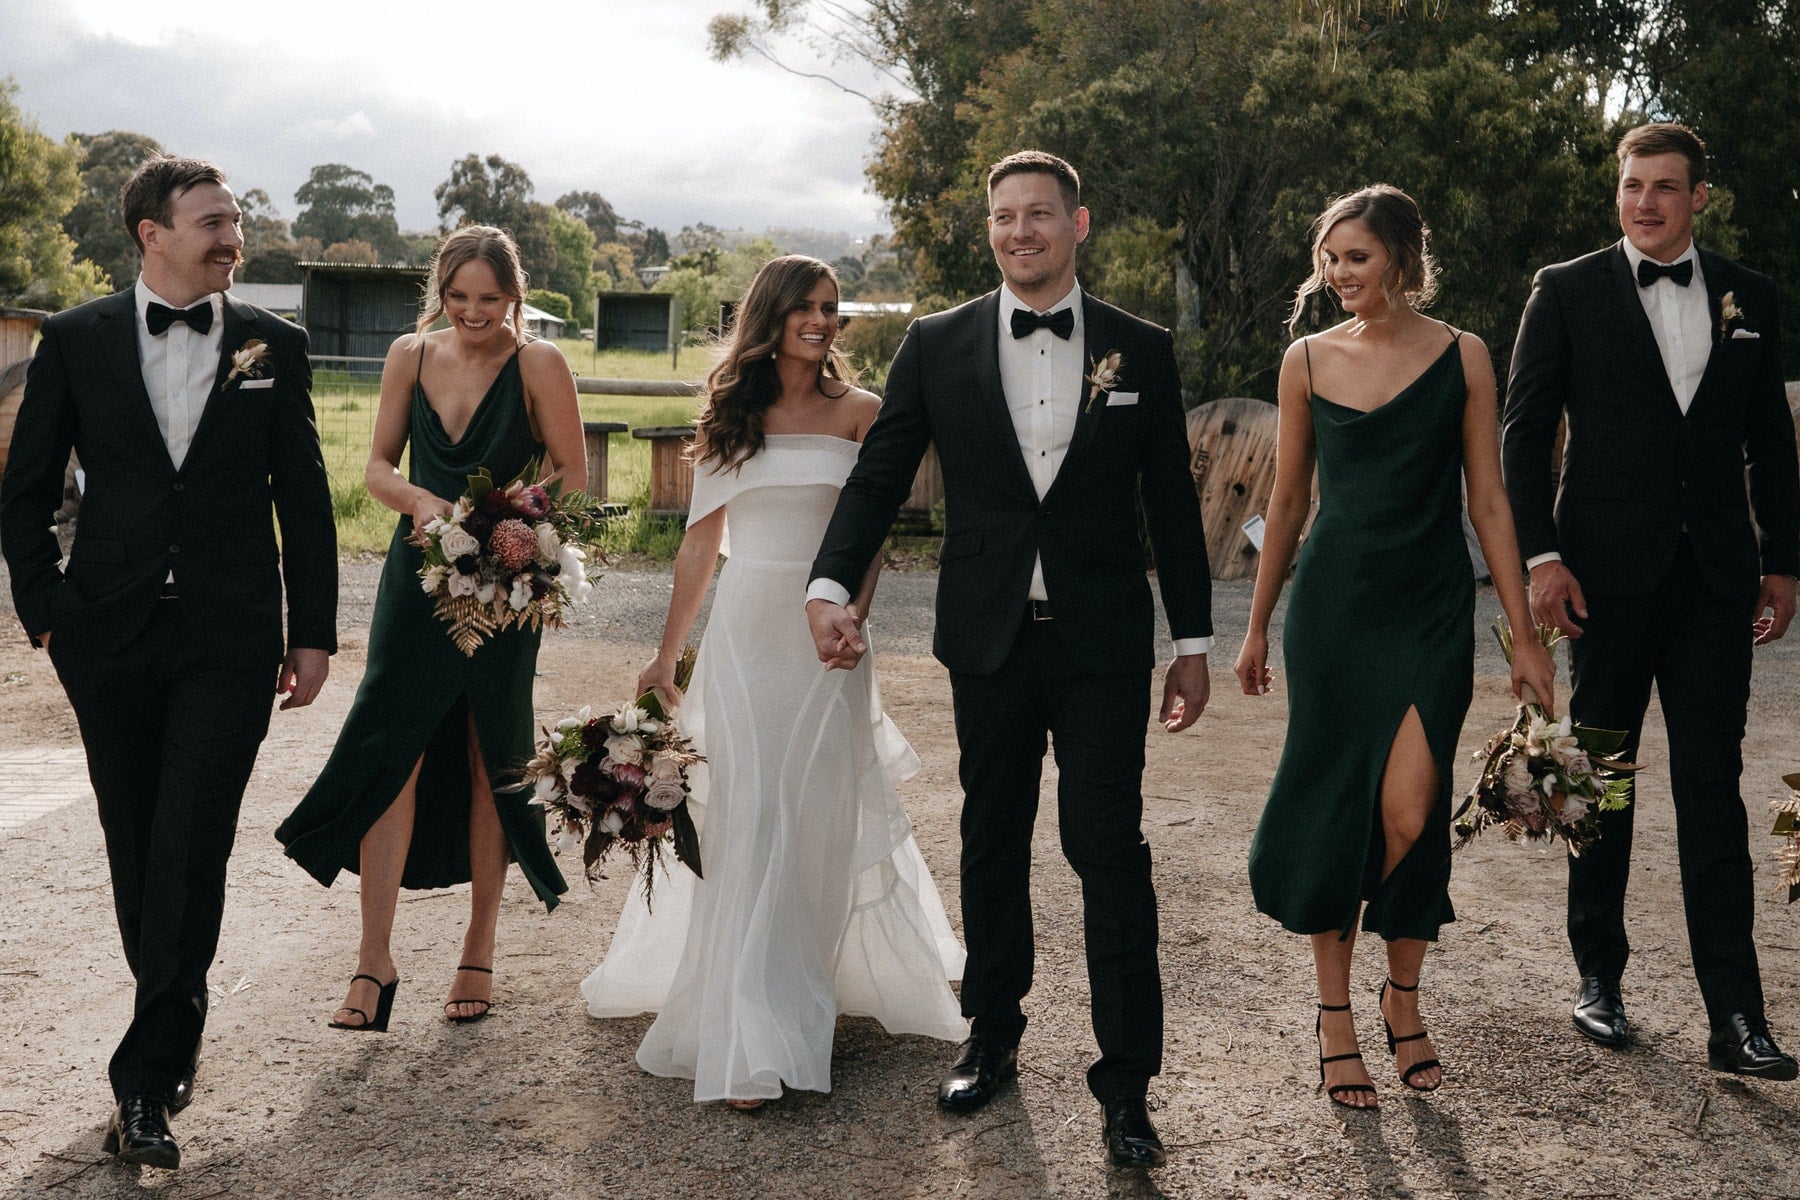 Buy Men's Wedding Suits in Melbourne